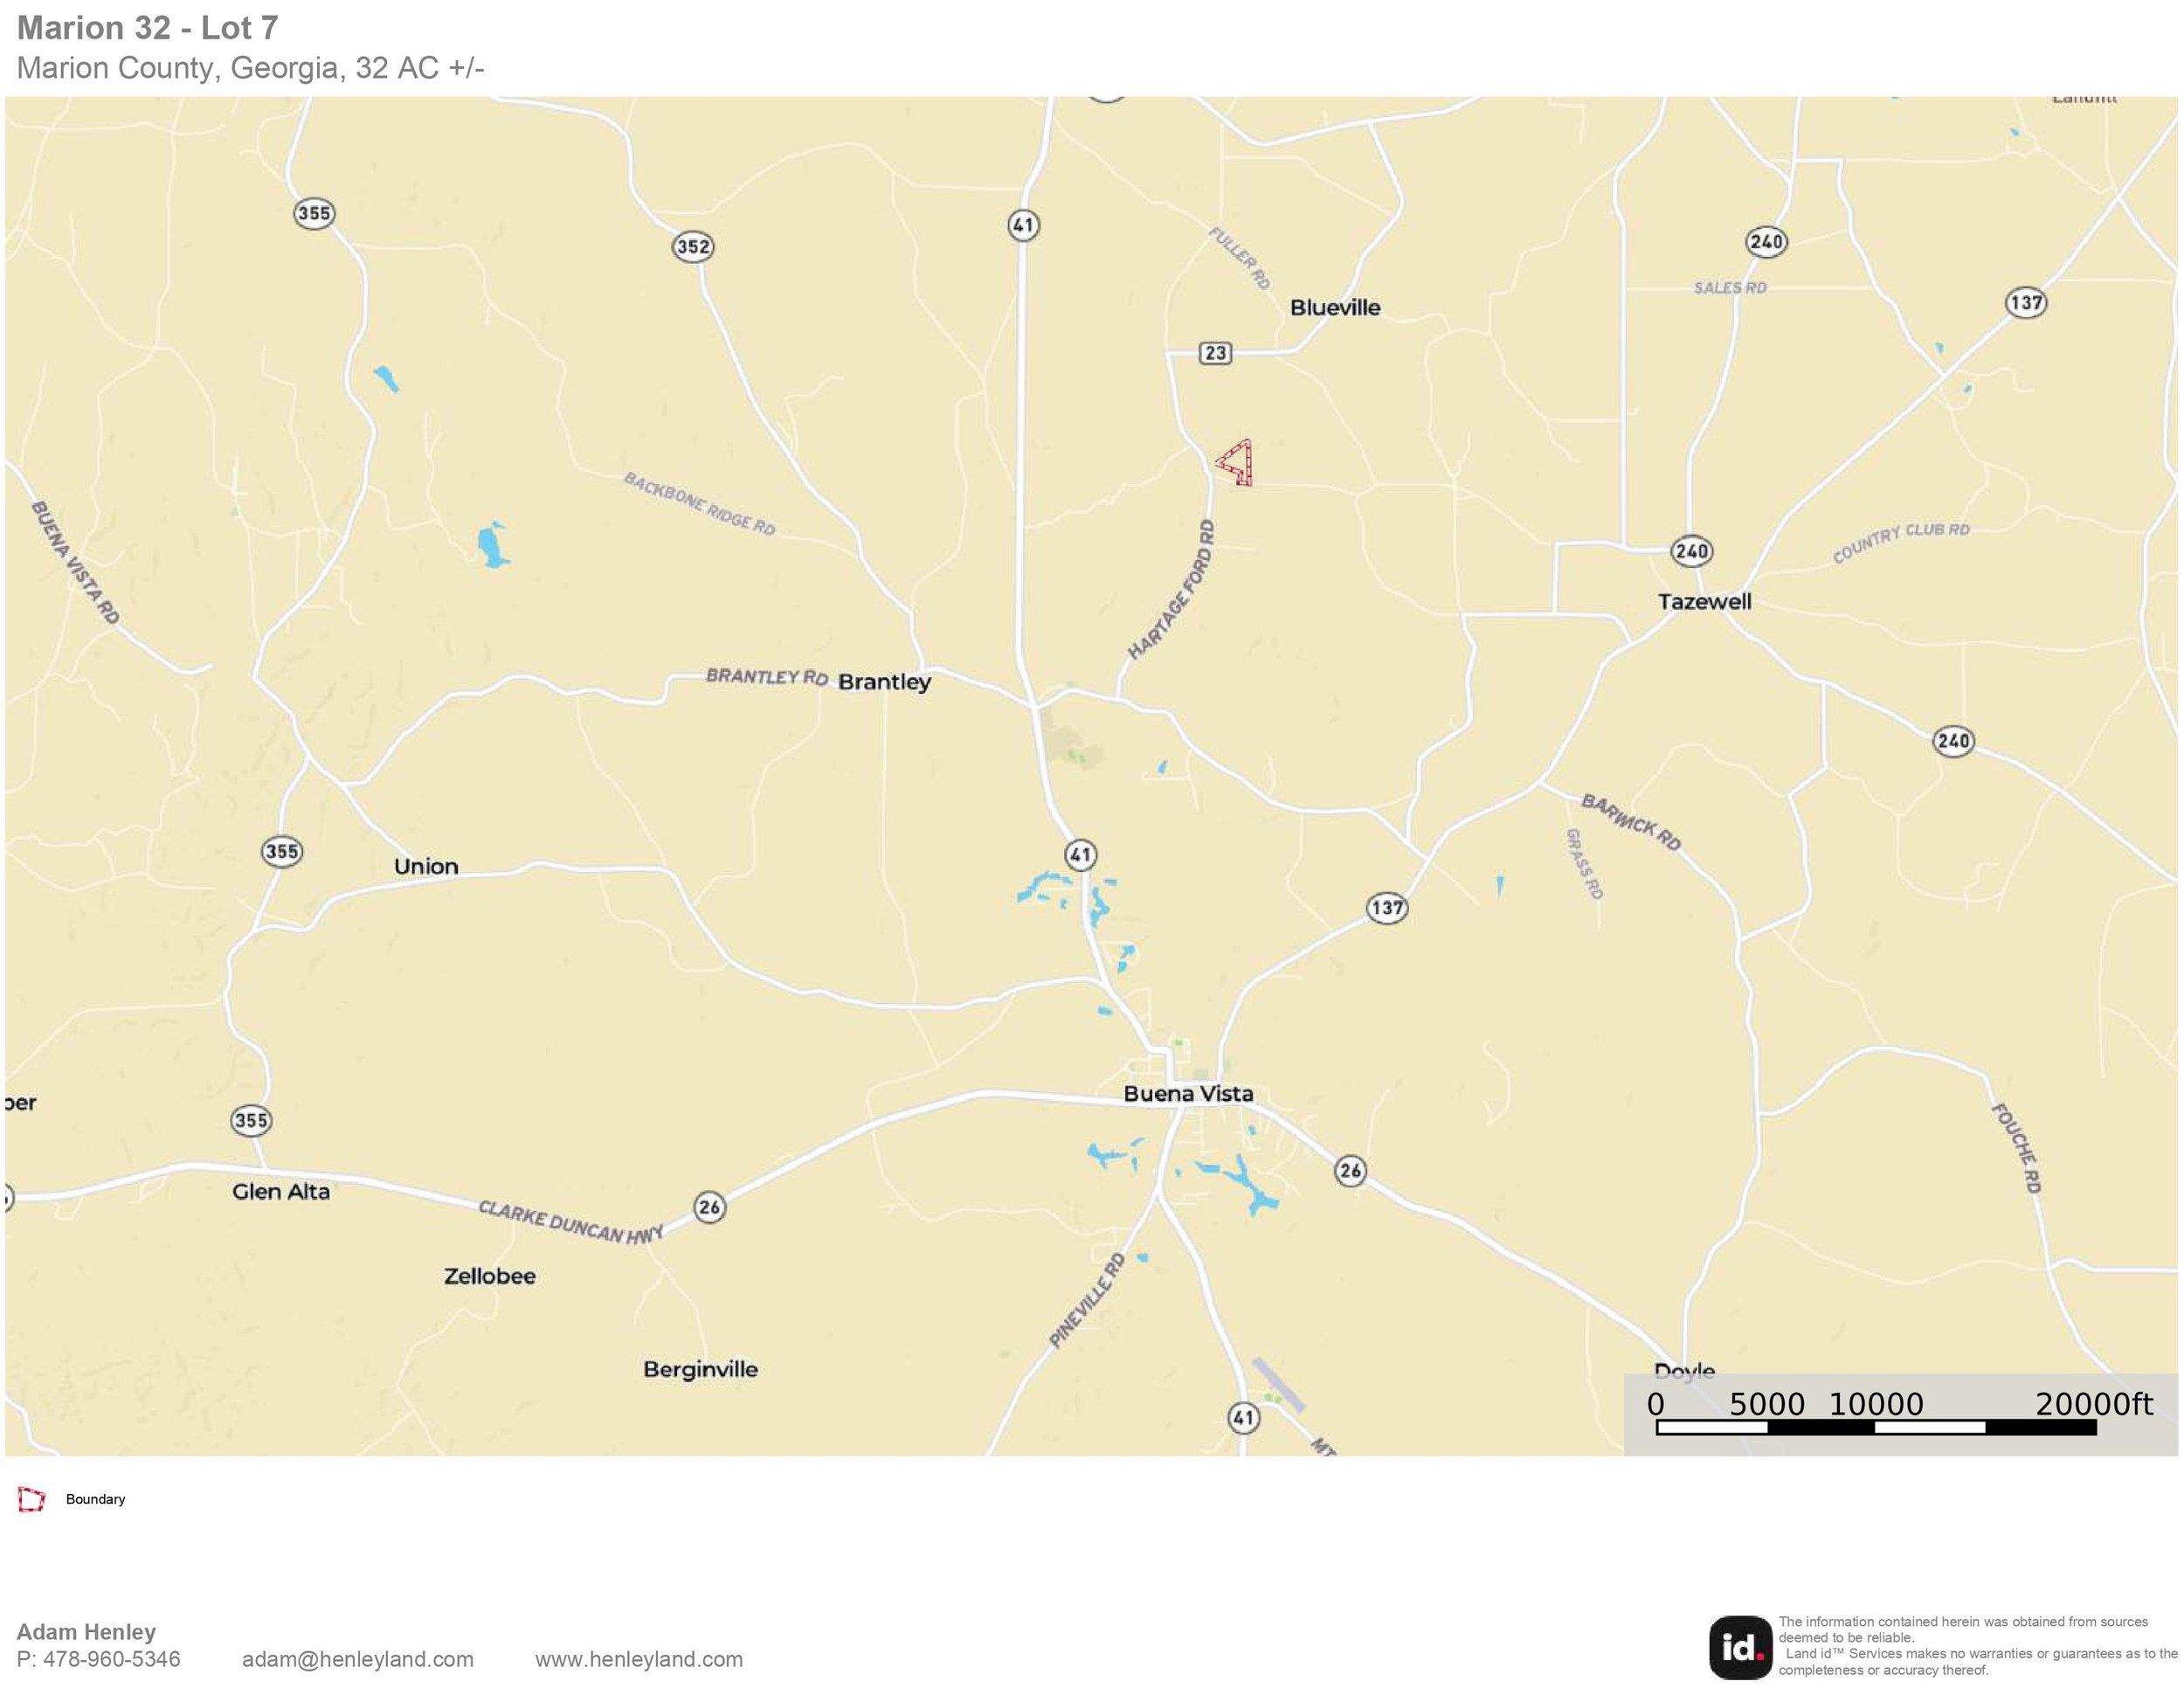 Marion 32 - Lot 7 - Location Map.jpg